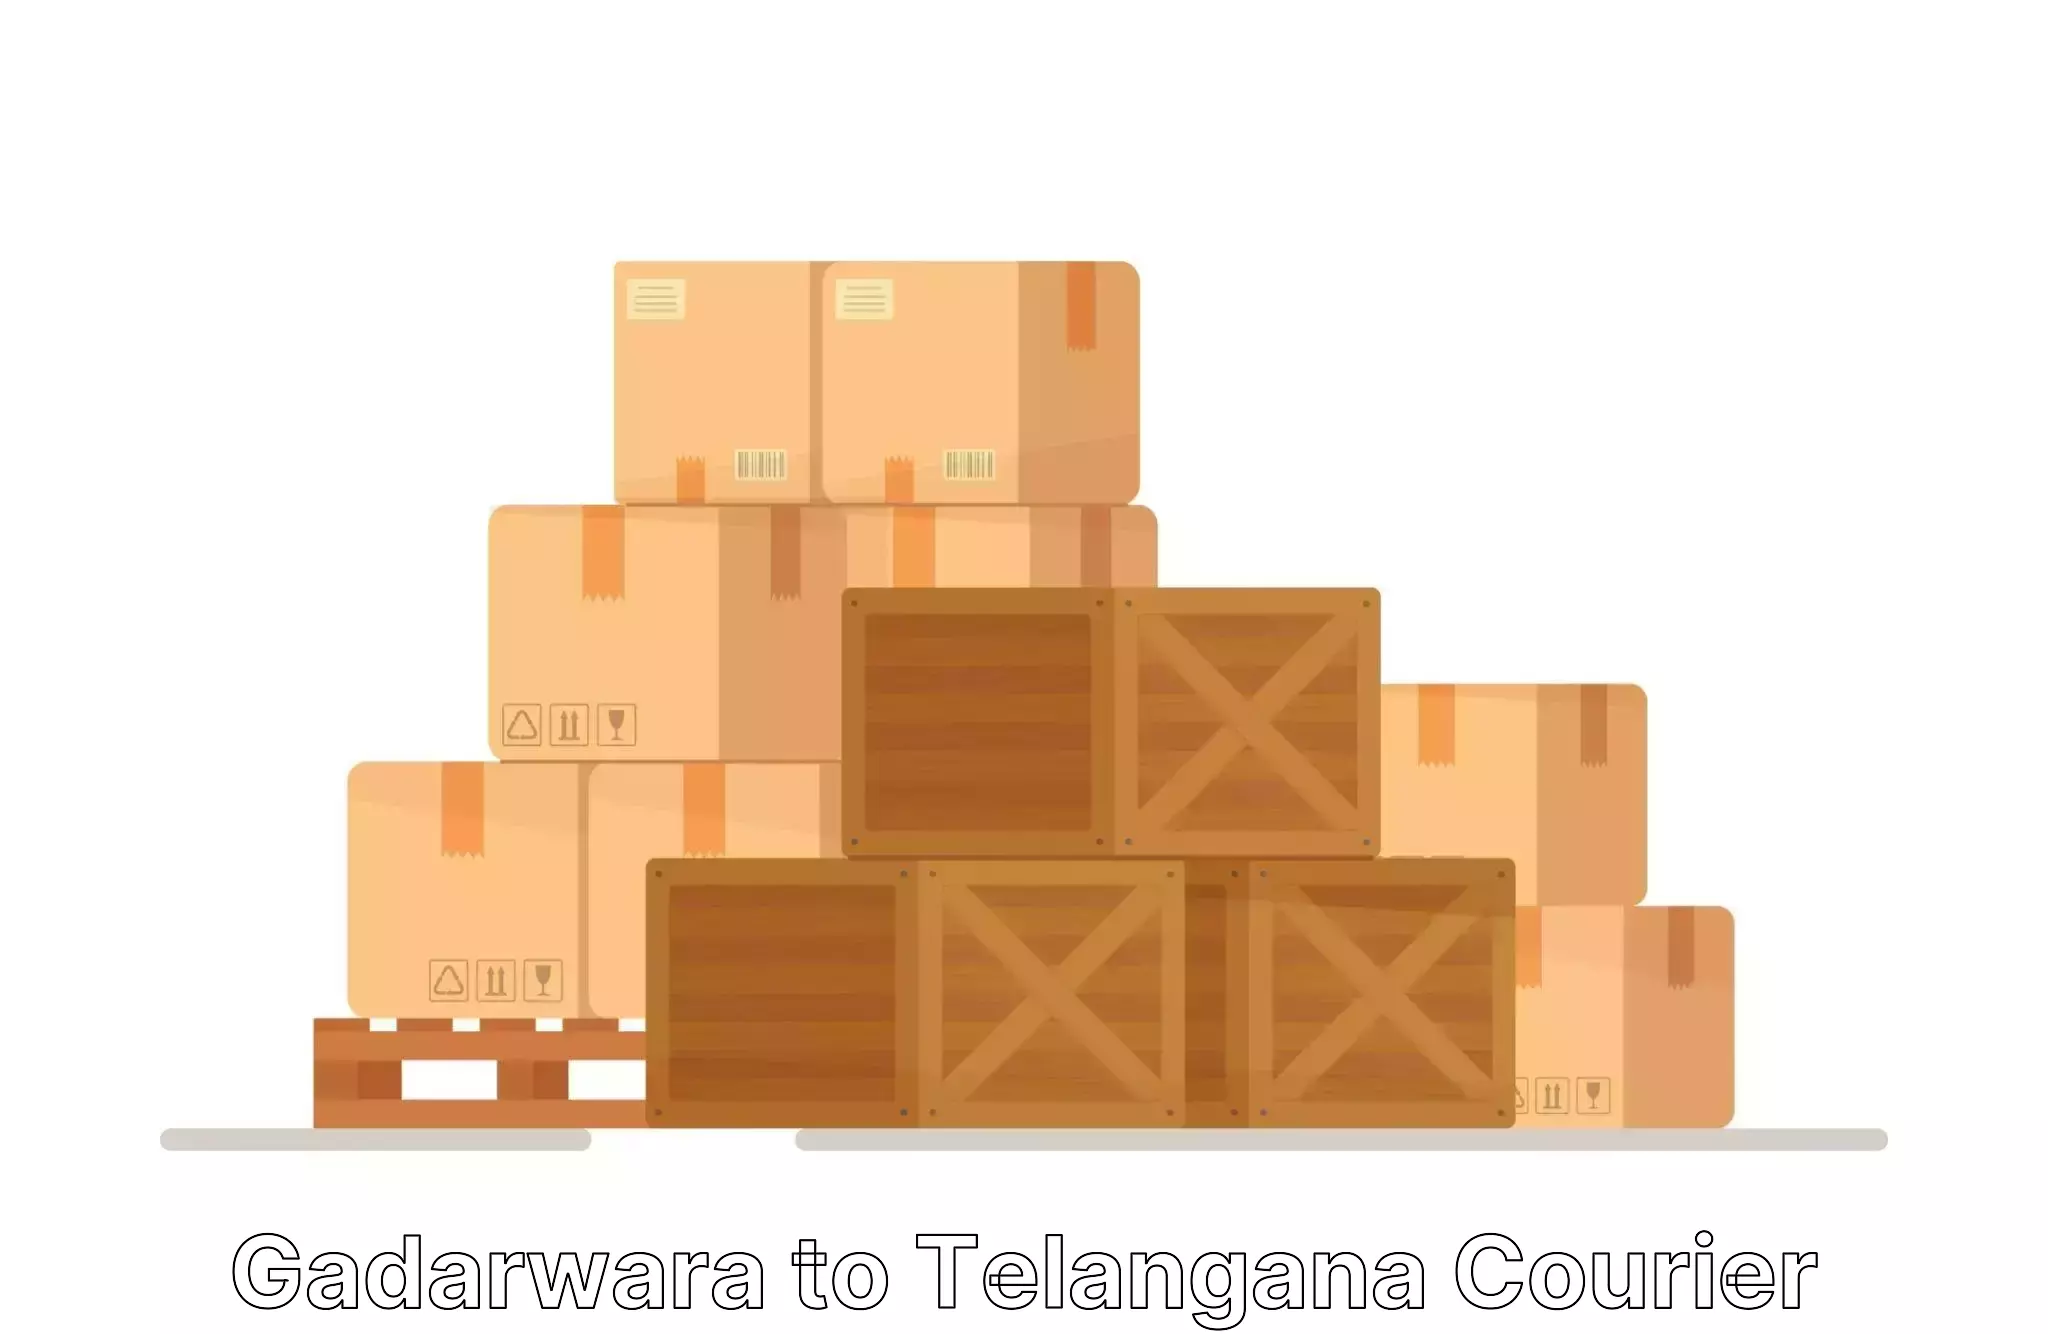 Furniture relocation experts Gadarwara to Telangana